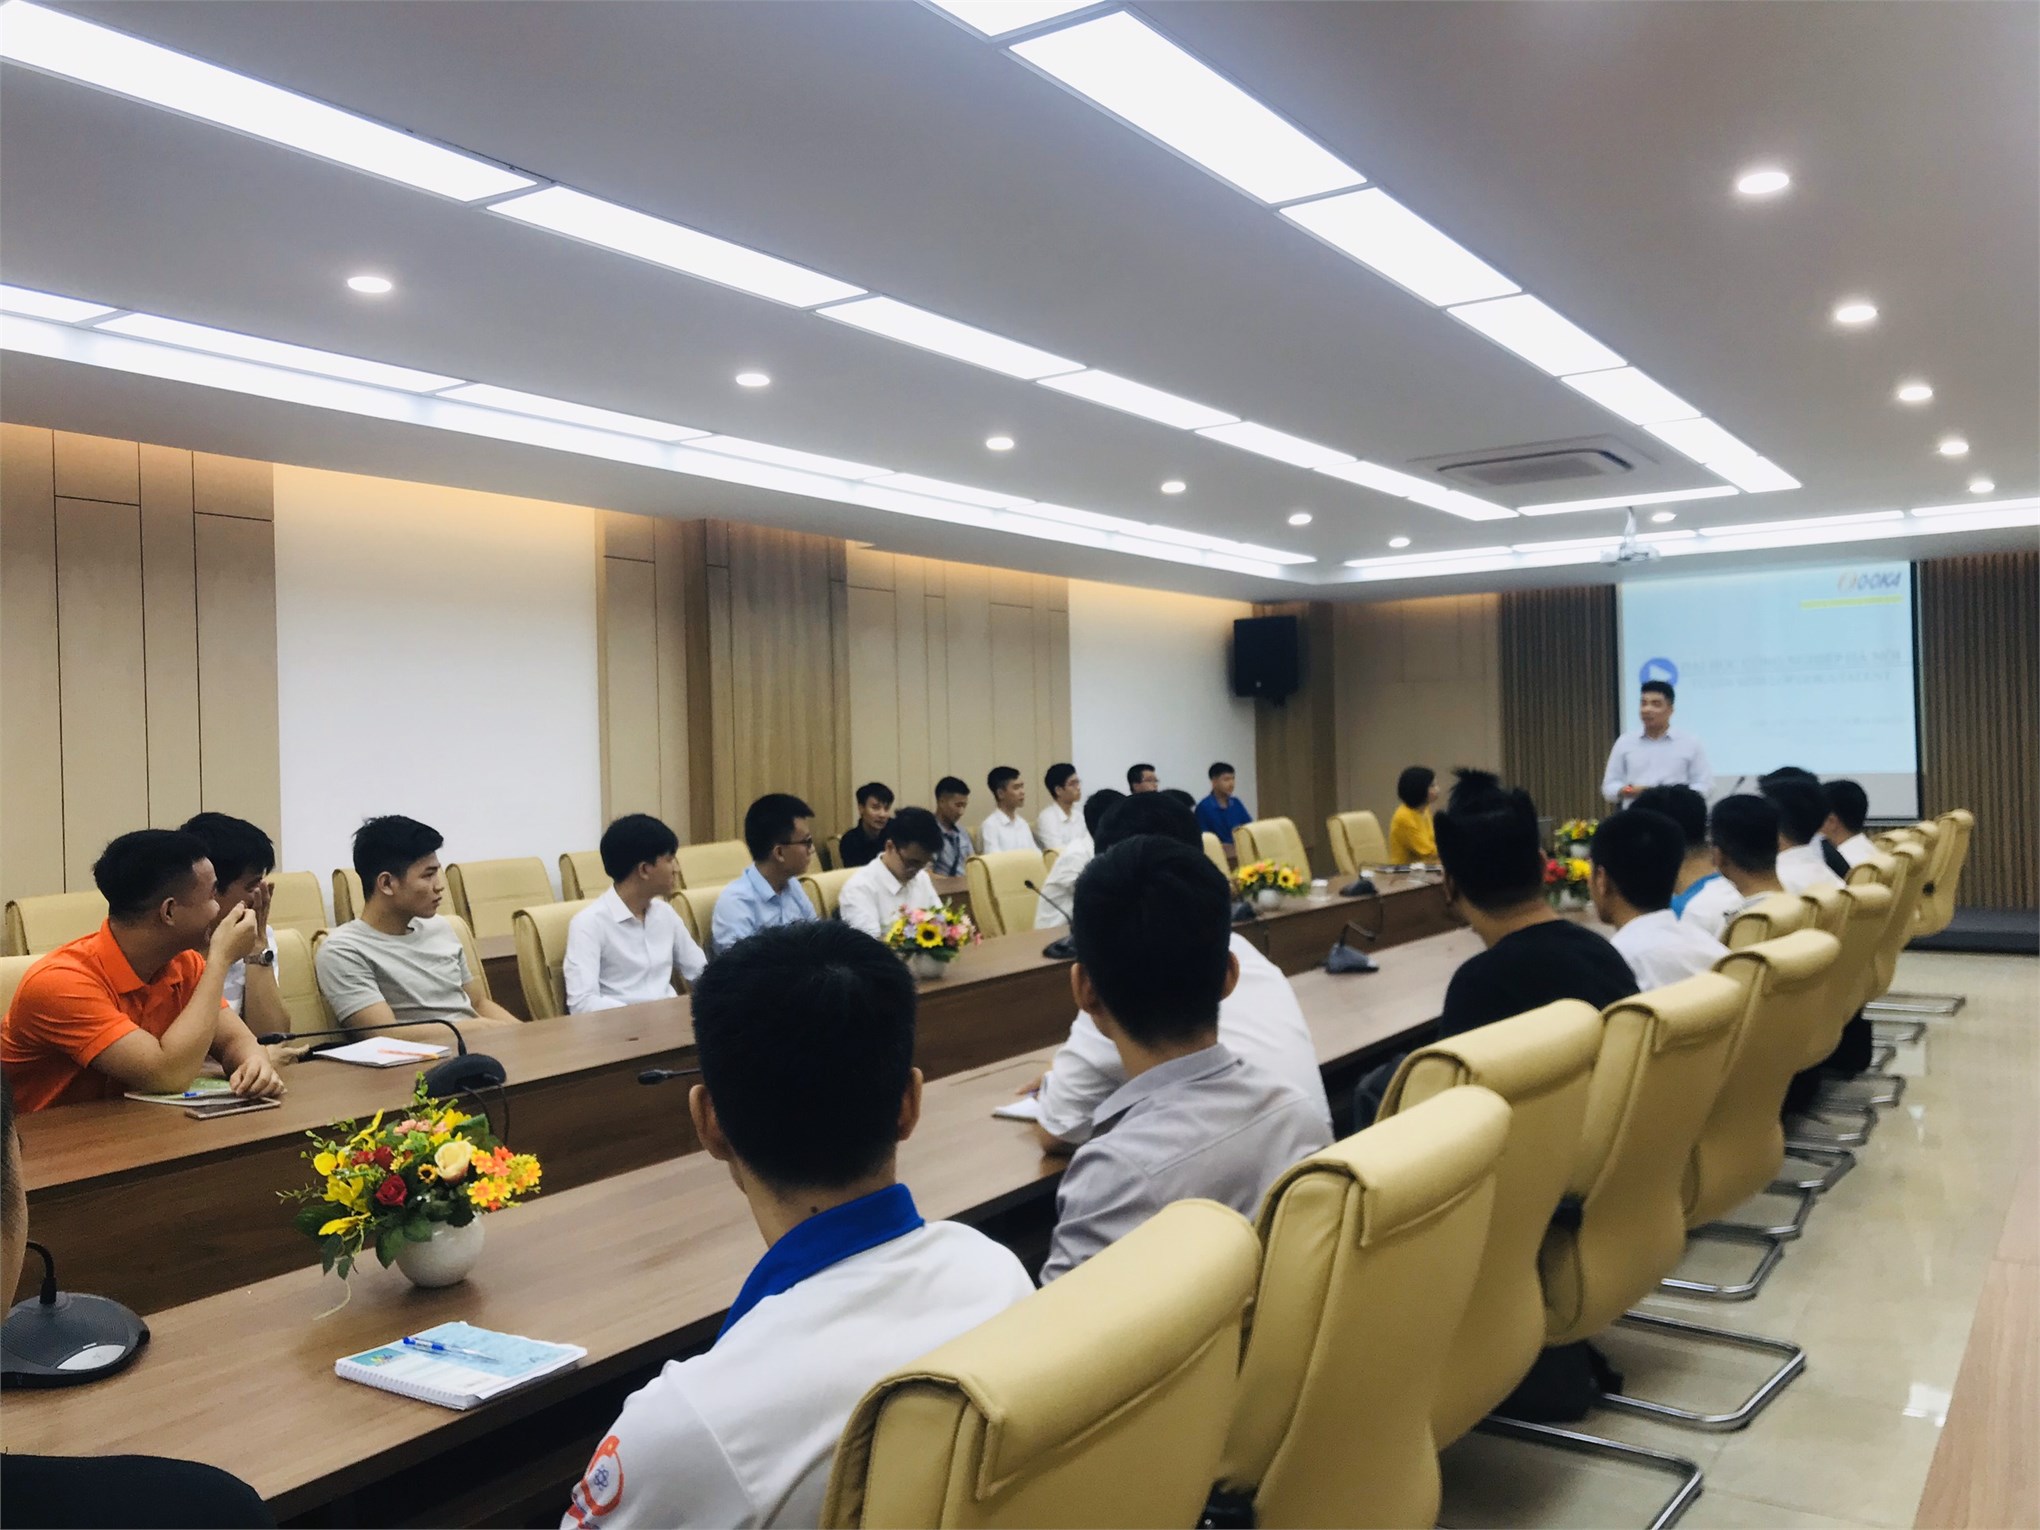 Hội thảo giới thiệu chương trình tuyển sinh lớp kỹ sư tài năng của công ty O-OKA GIKEN Nhật Bản dành cho sinh viên trình độ đại học khóa 12 - Khoa Cơ khí